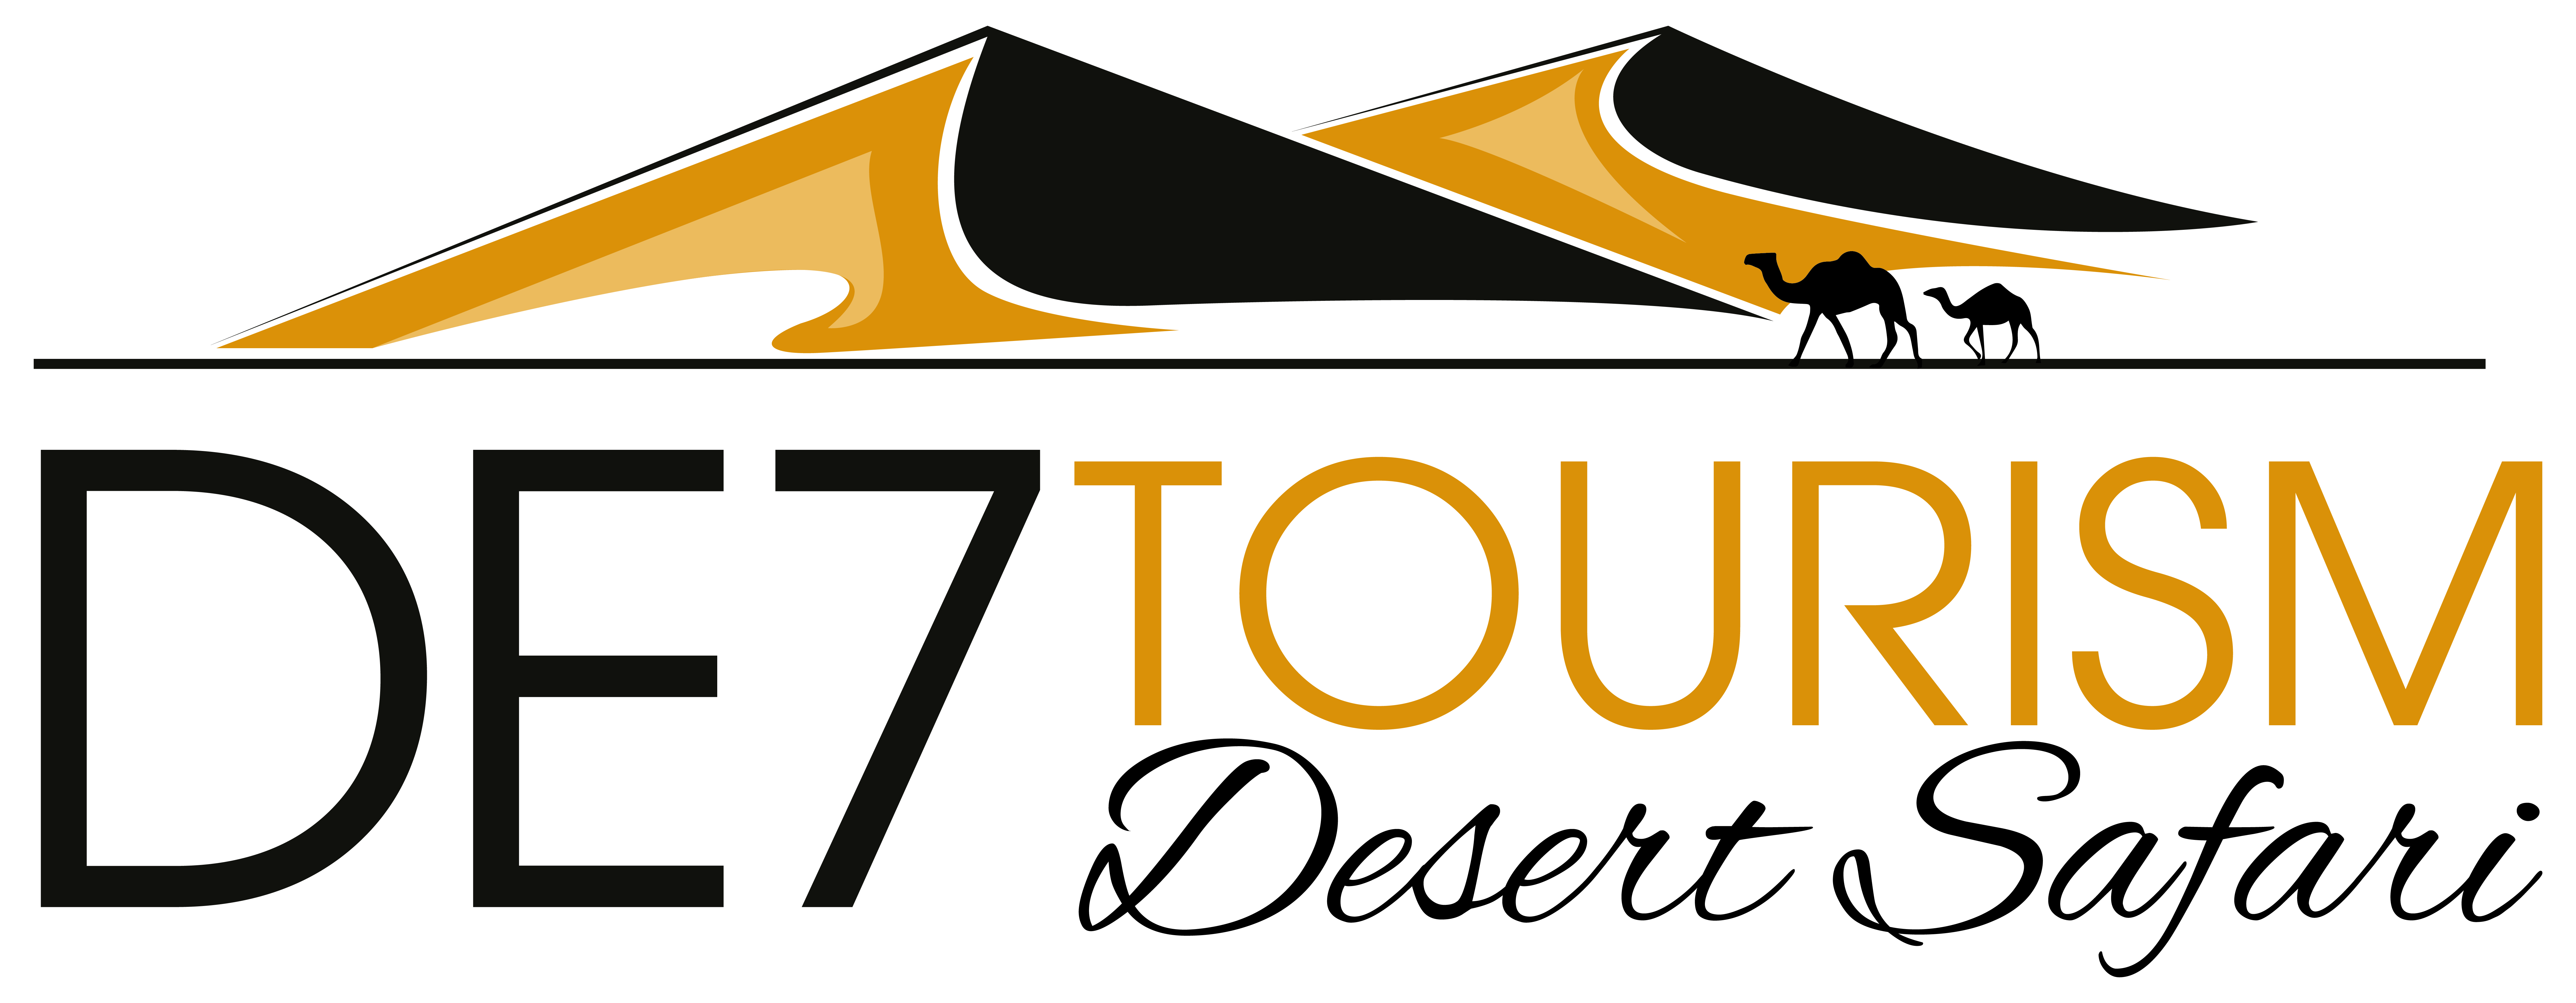 de7tourism